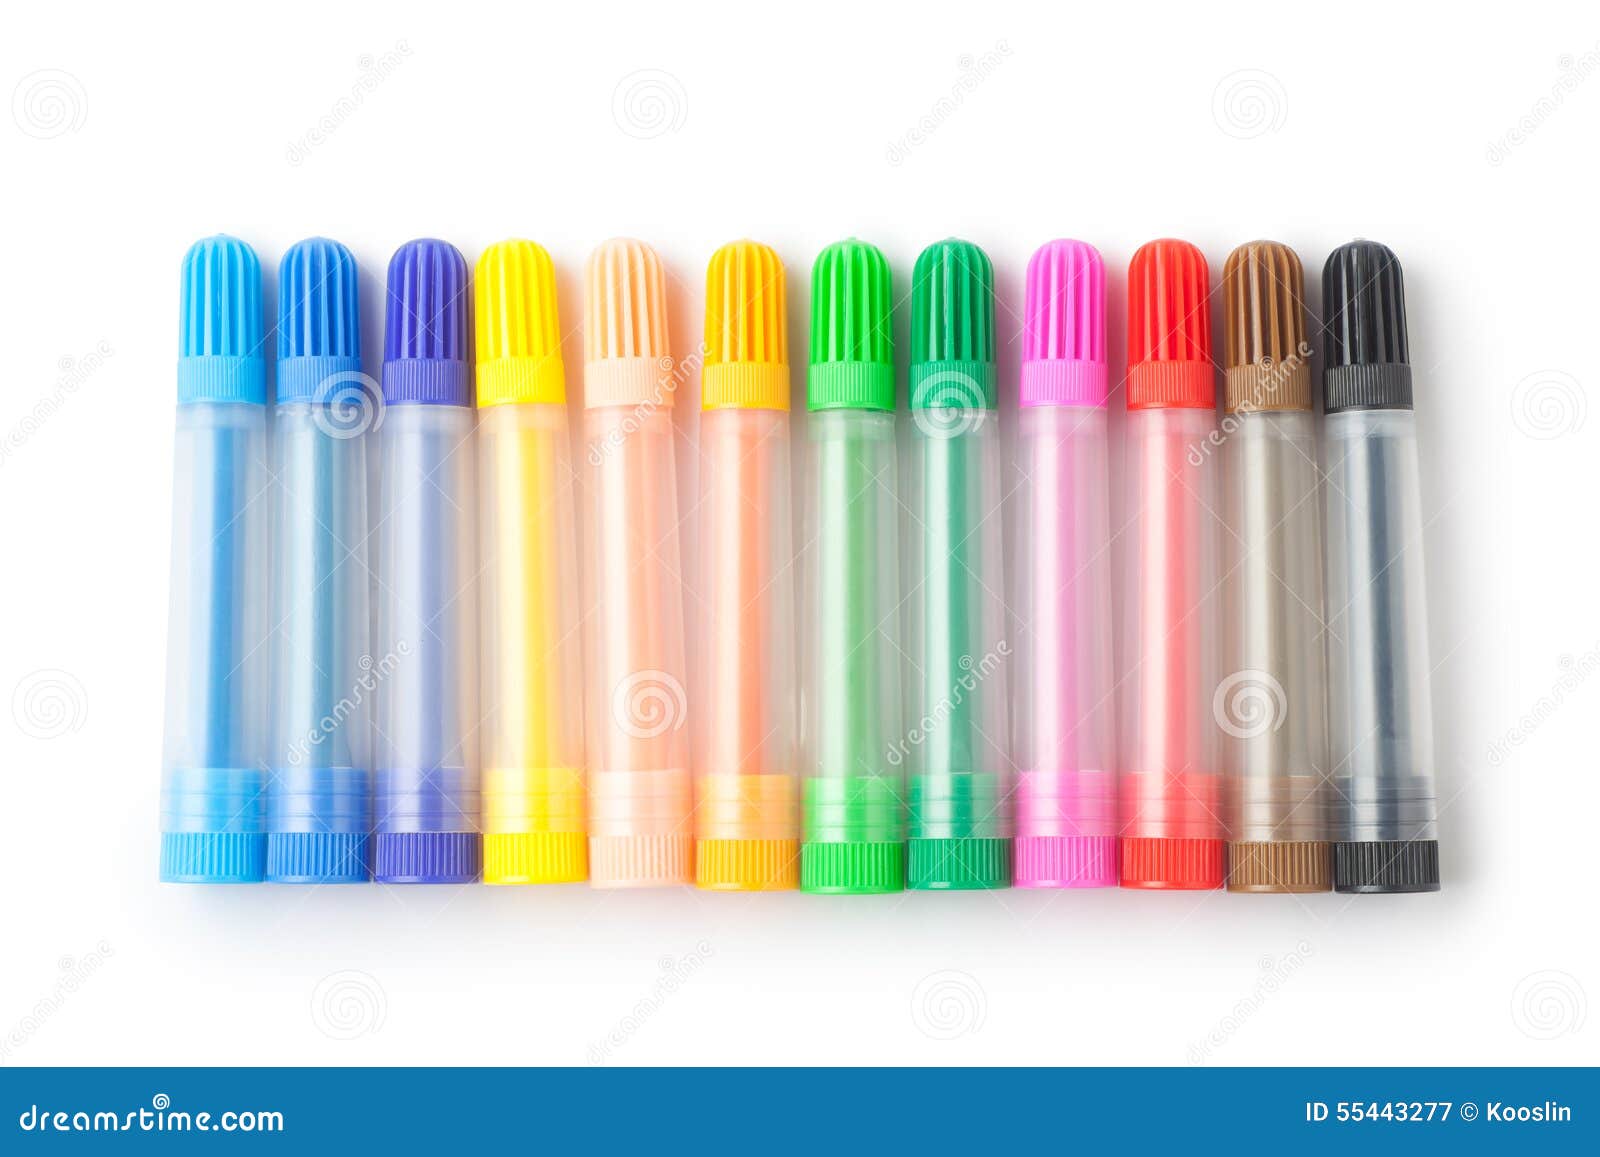 color felt-tip pens